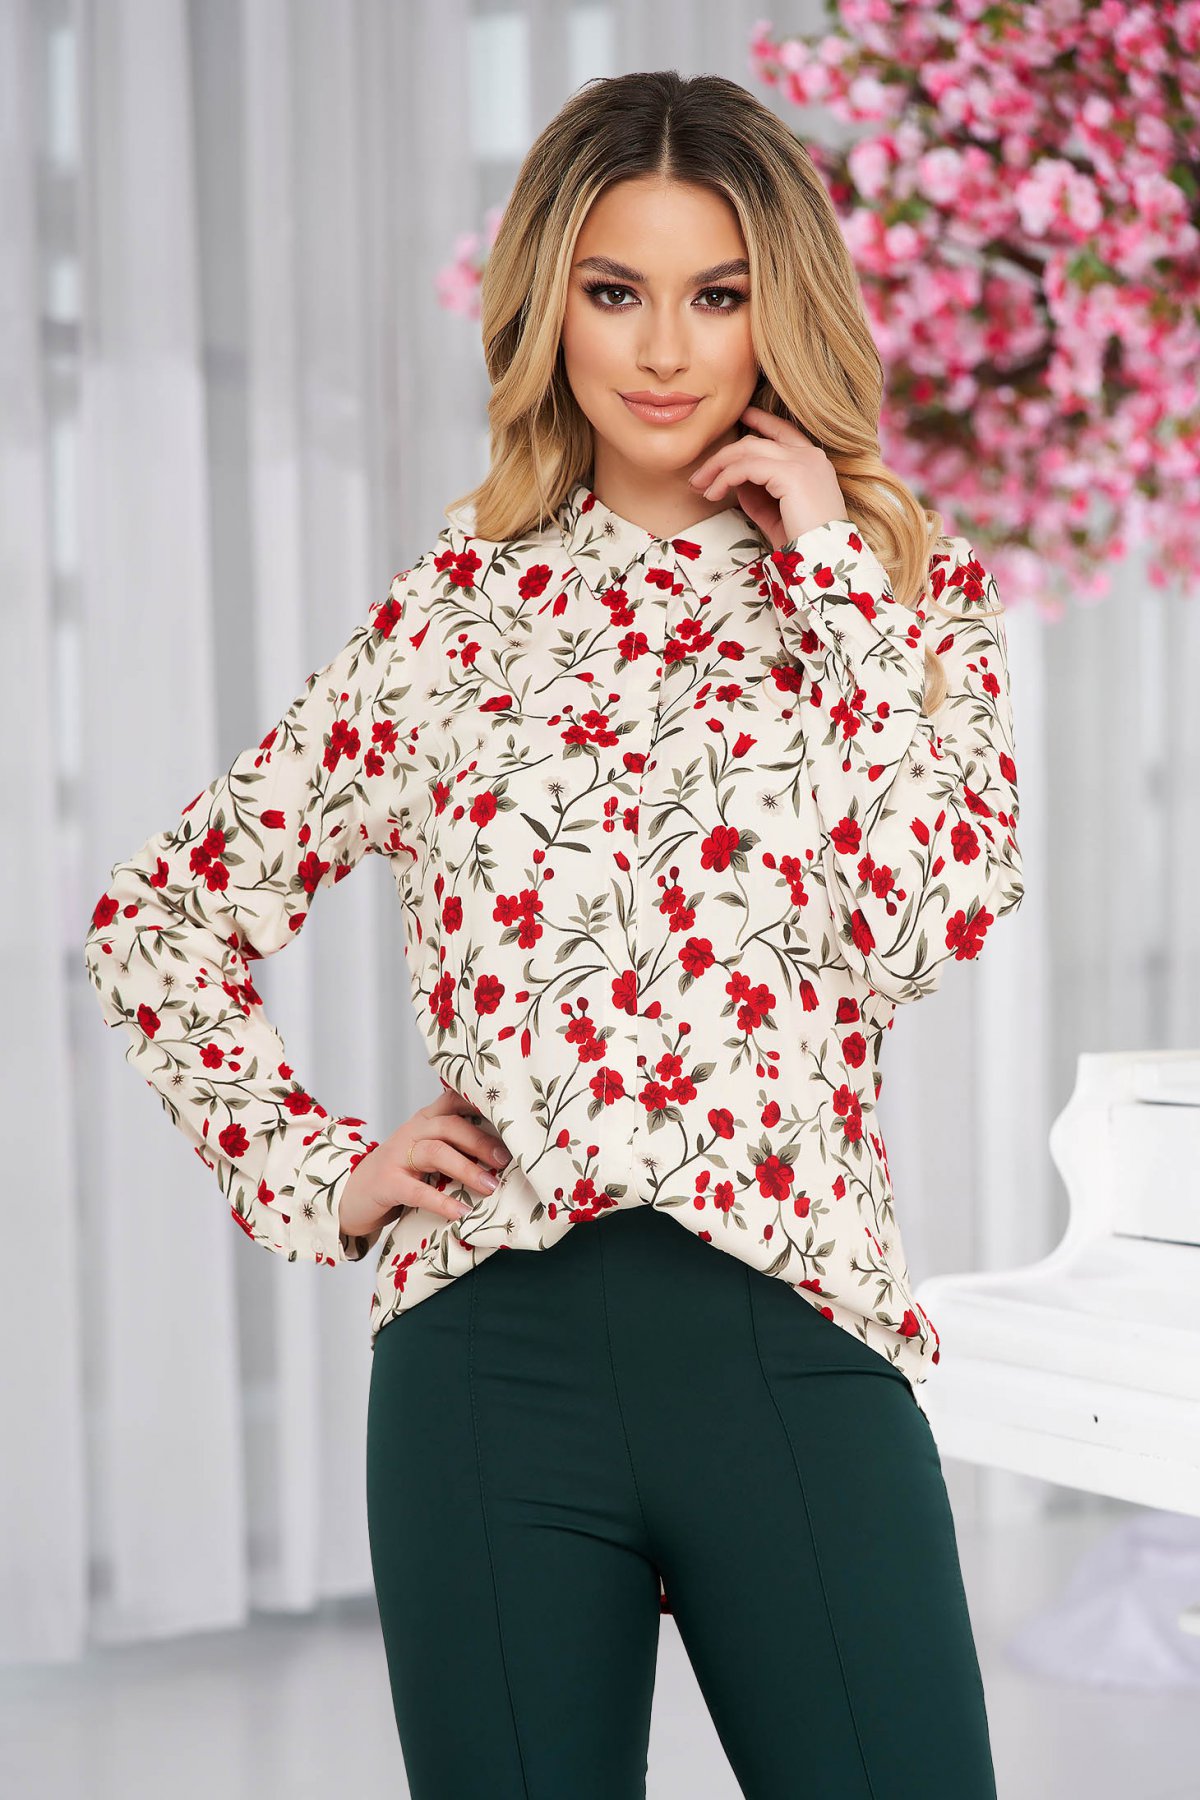 Bluza dama SunShine cu croi larg din bumbac cu imprimeu floral 2022 ❤️ Pret Super starshiners imagine noua 2022